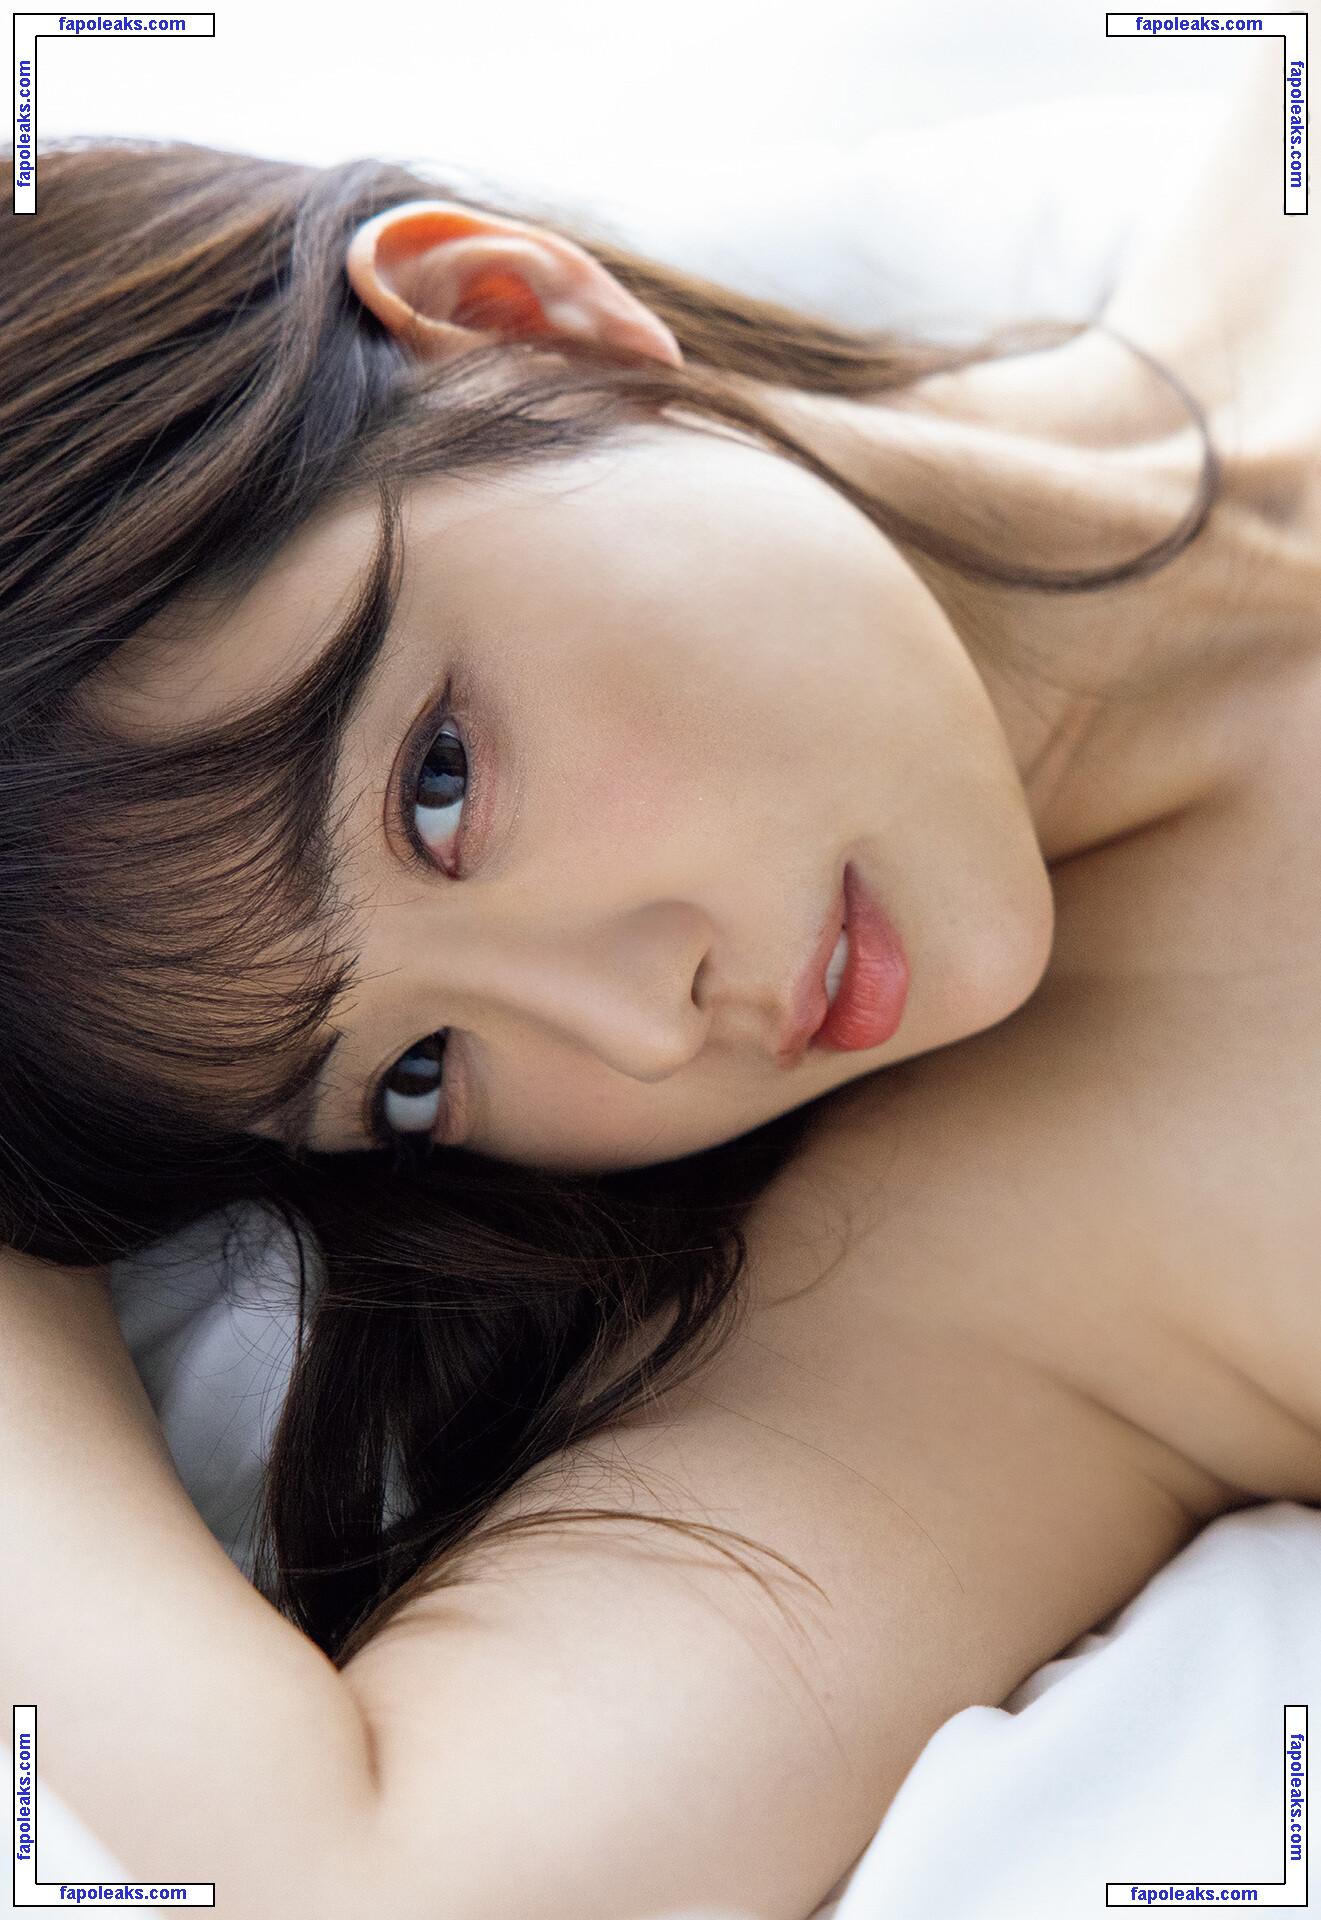 Shion Utsunomiya / Rara Anzai / Rion nude photo #0134 from OnlyFans